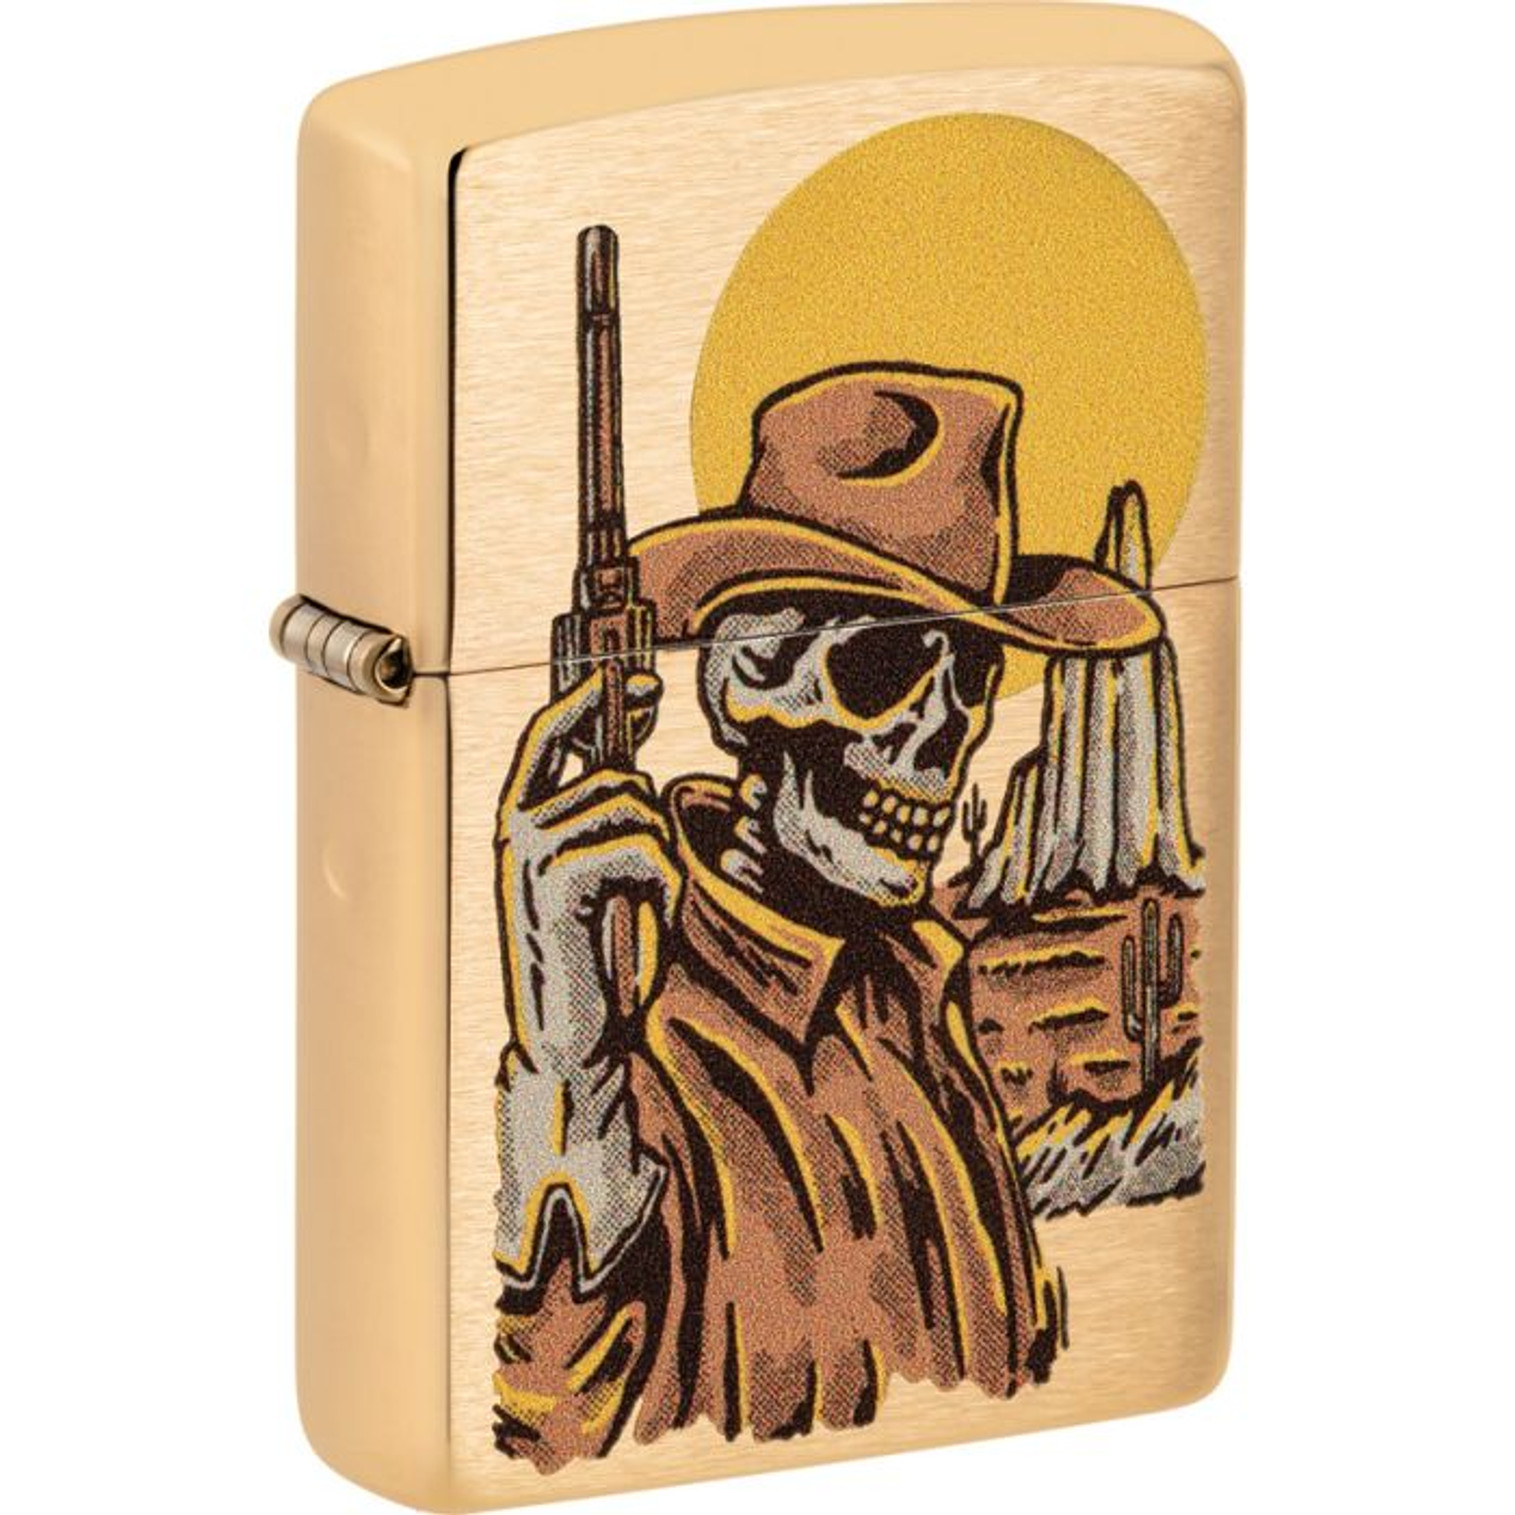 Cowboy Skull Design Lighter